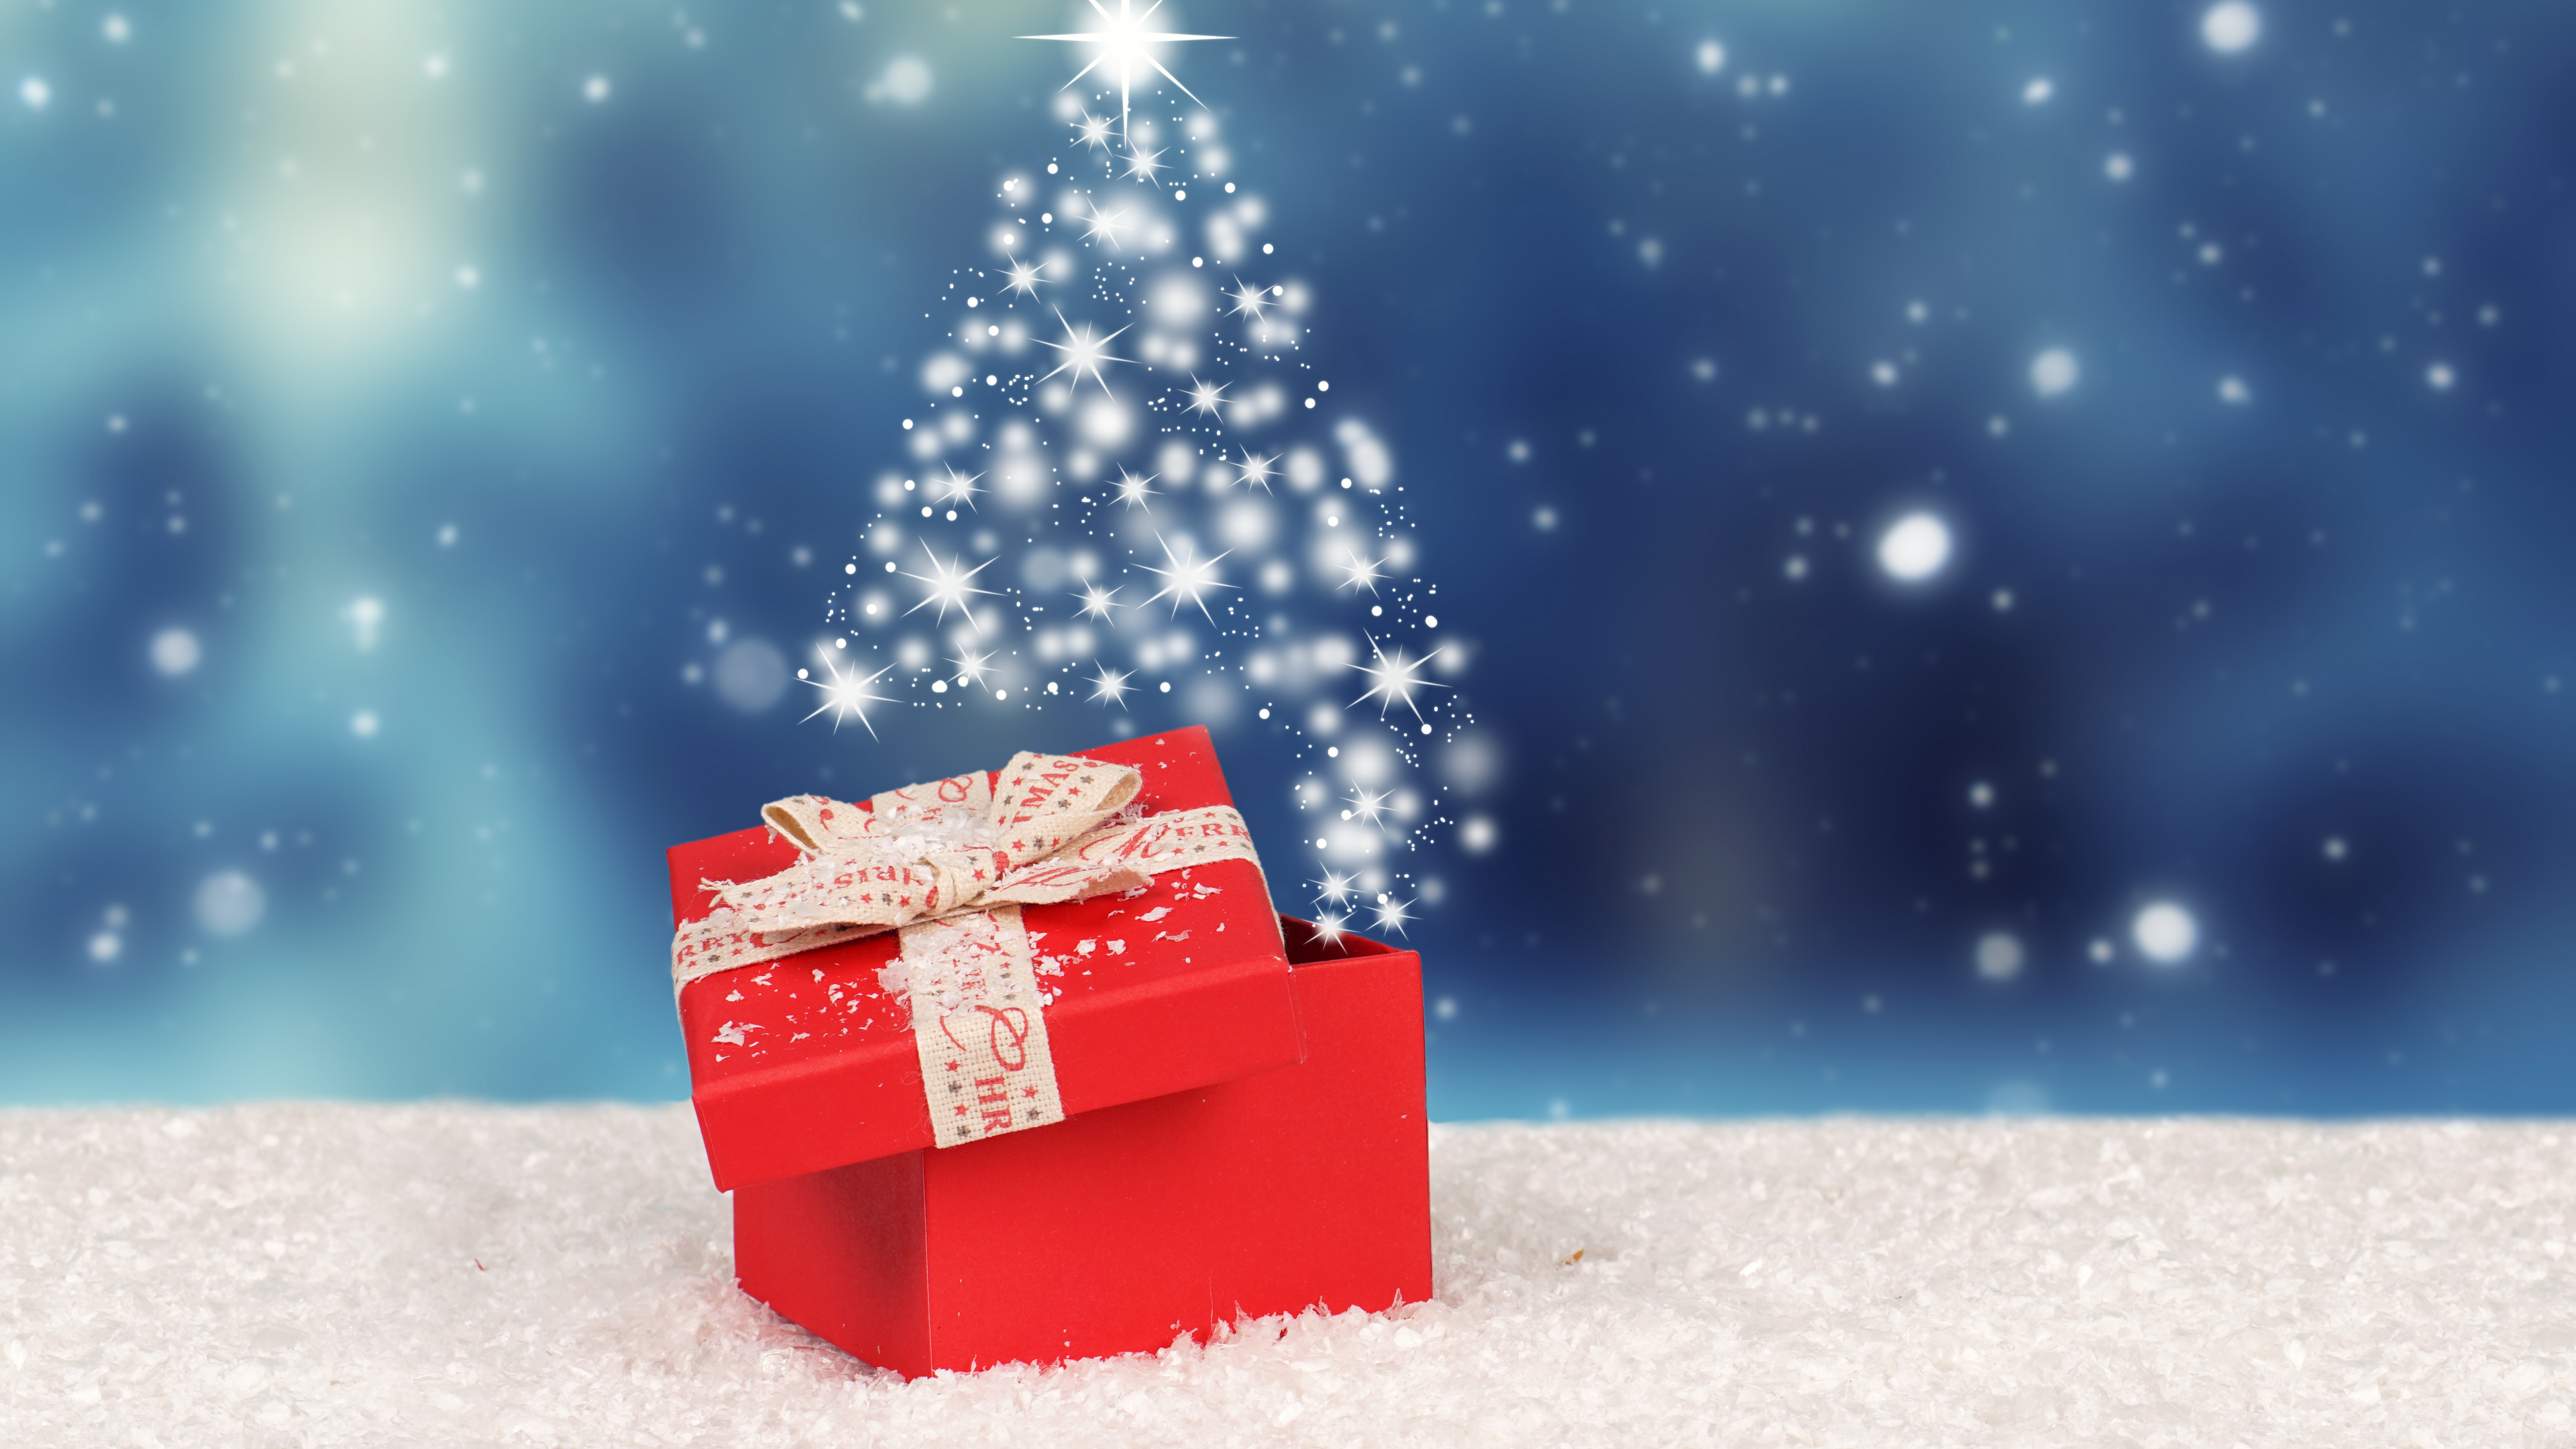 圣诞节那天, 冬天, 圣诞节, 圣诞树, 圣诞前夕 壁纸 3840x2160 允许